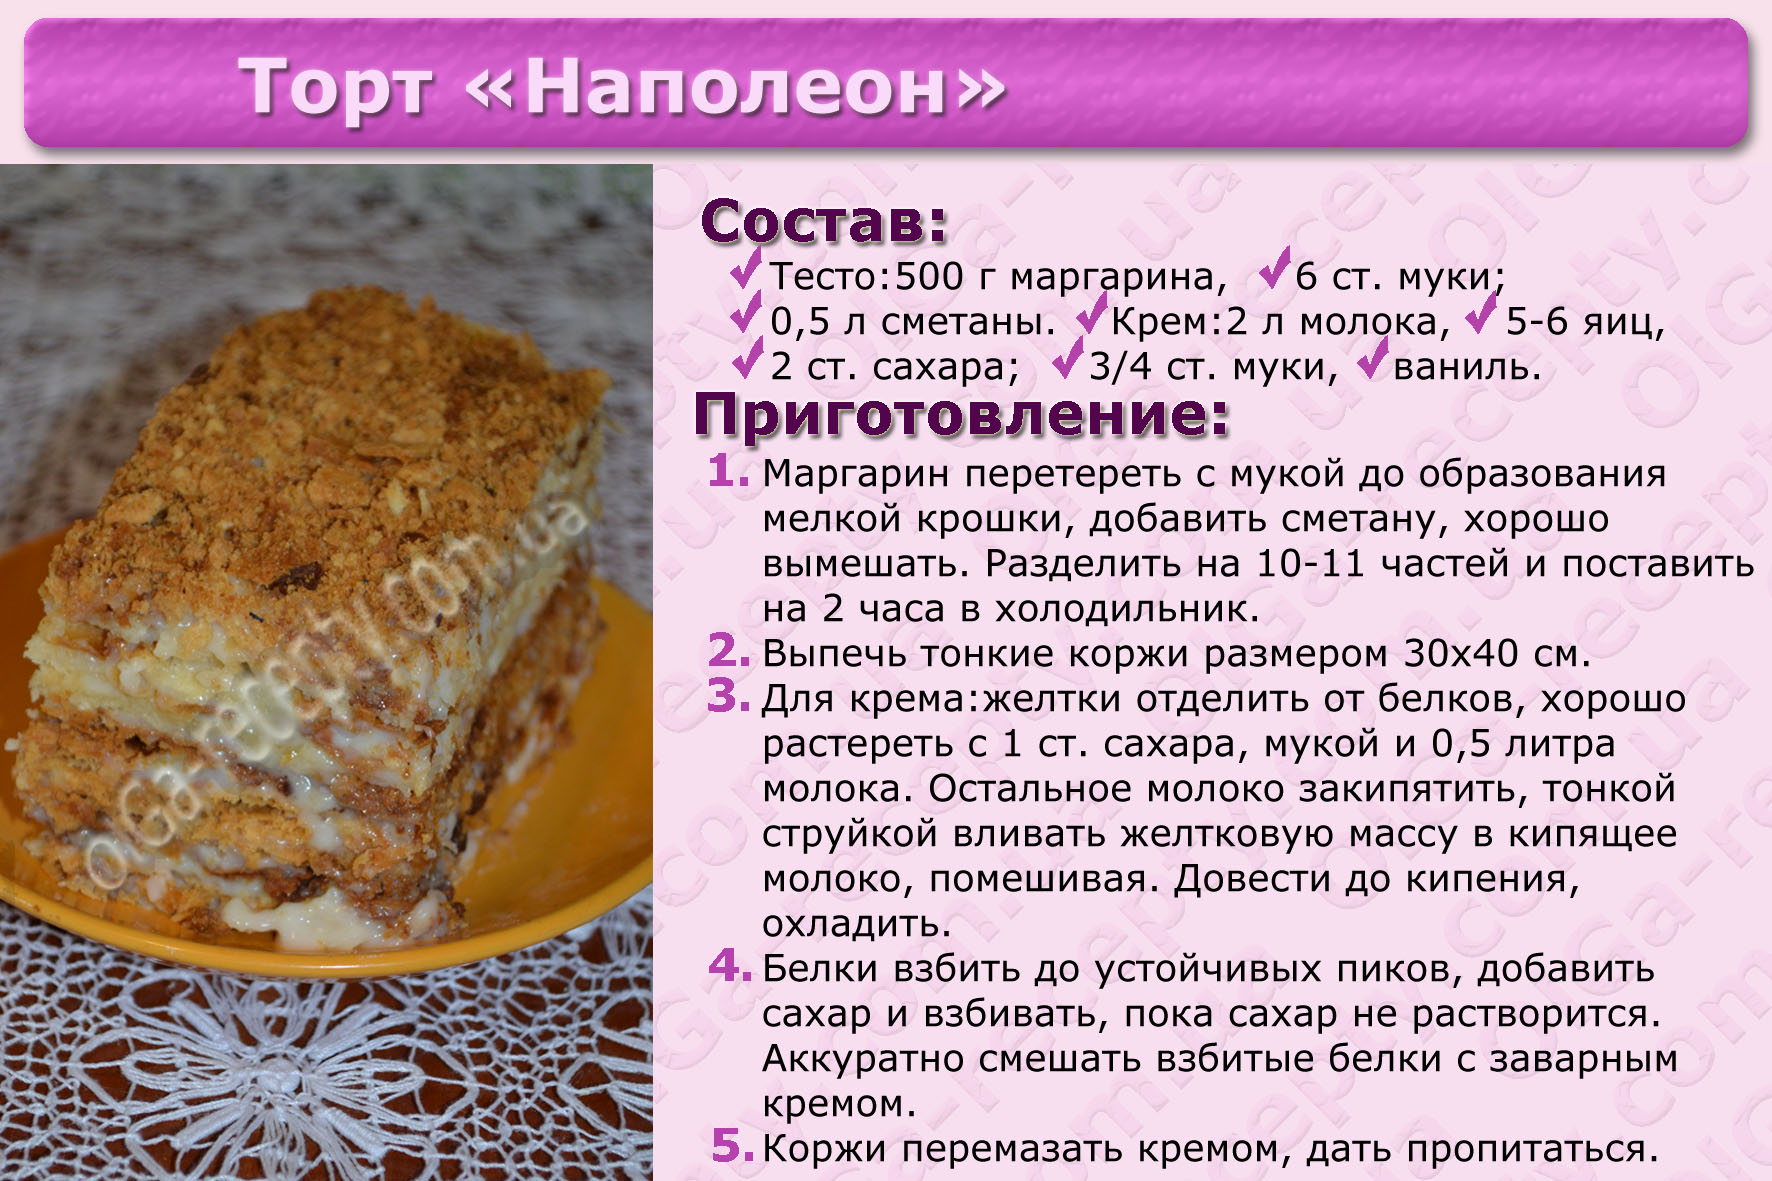 Простые рецепты теста для тортов. Рецепты тортов с описанием. Картинки с рецептами тортов. Несложные рецепты тортов с картинкой. Рецепт торта красивый простой.